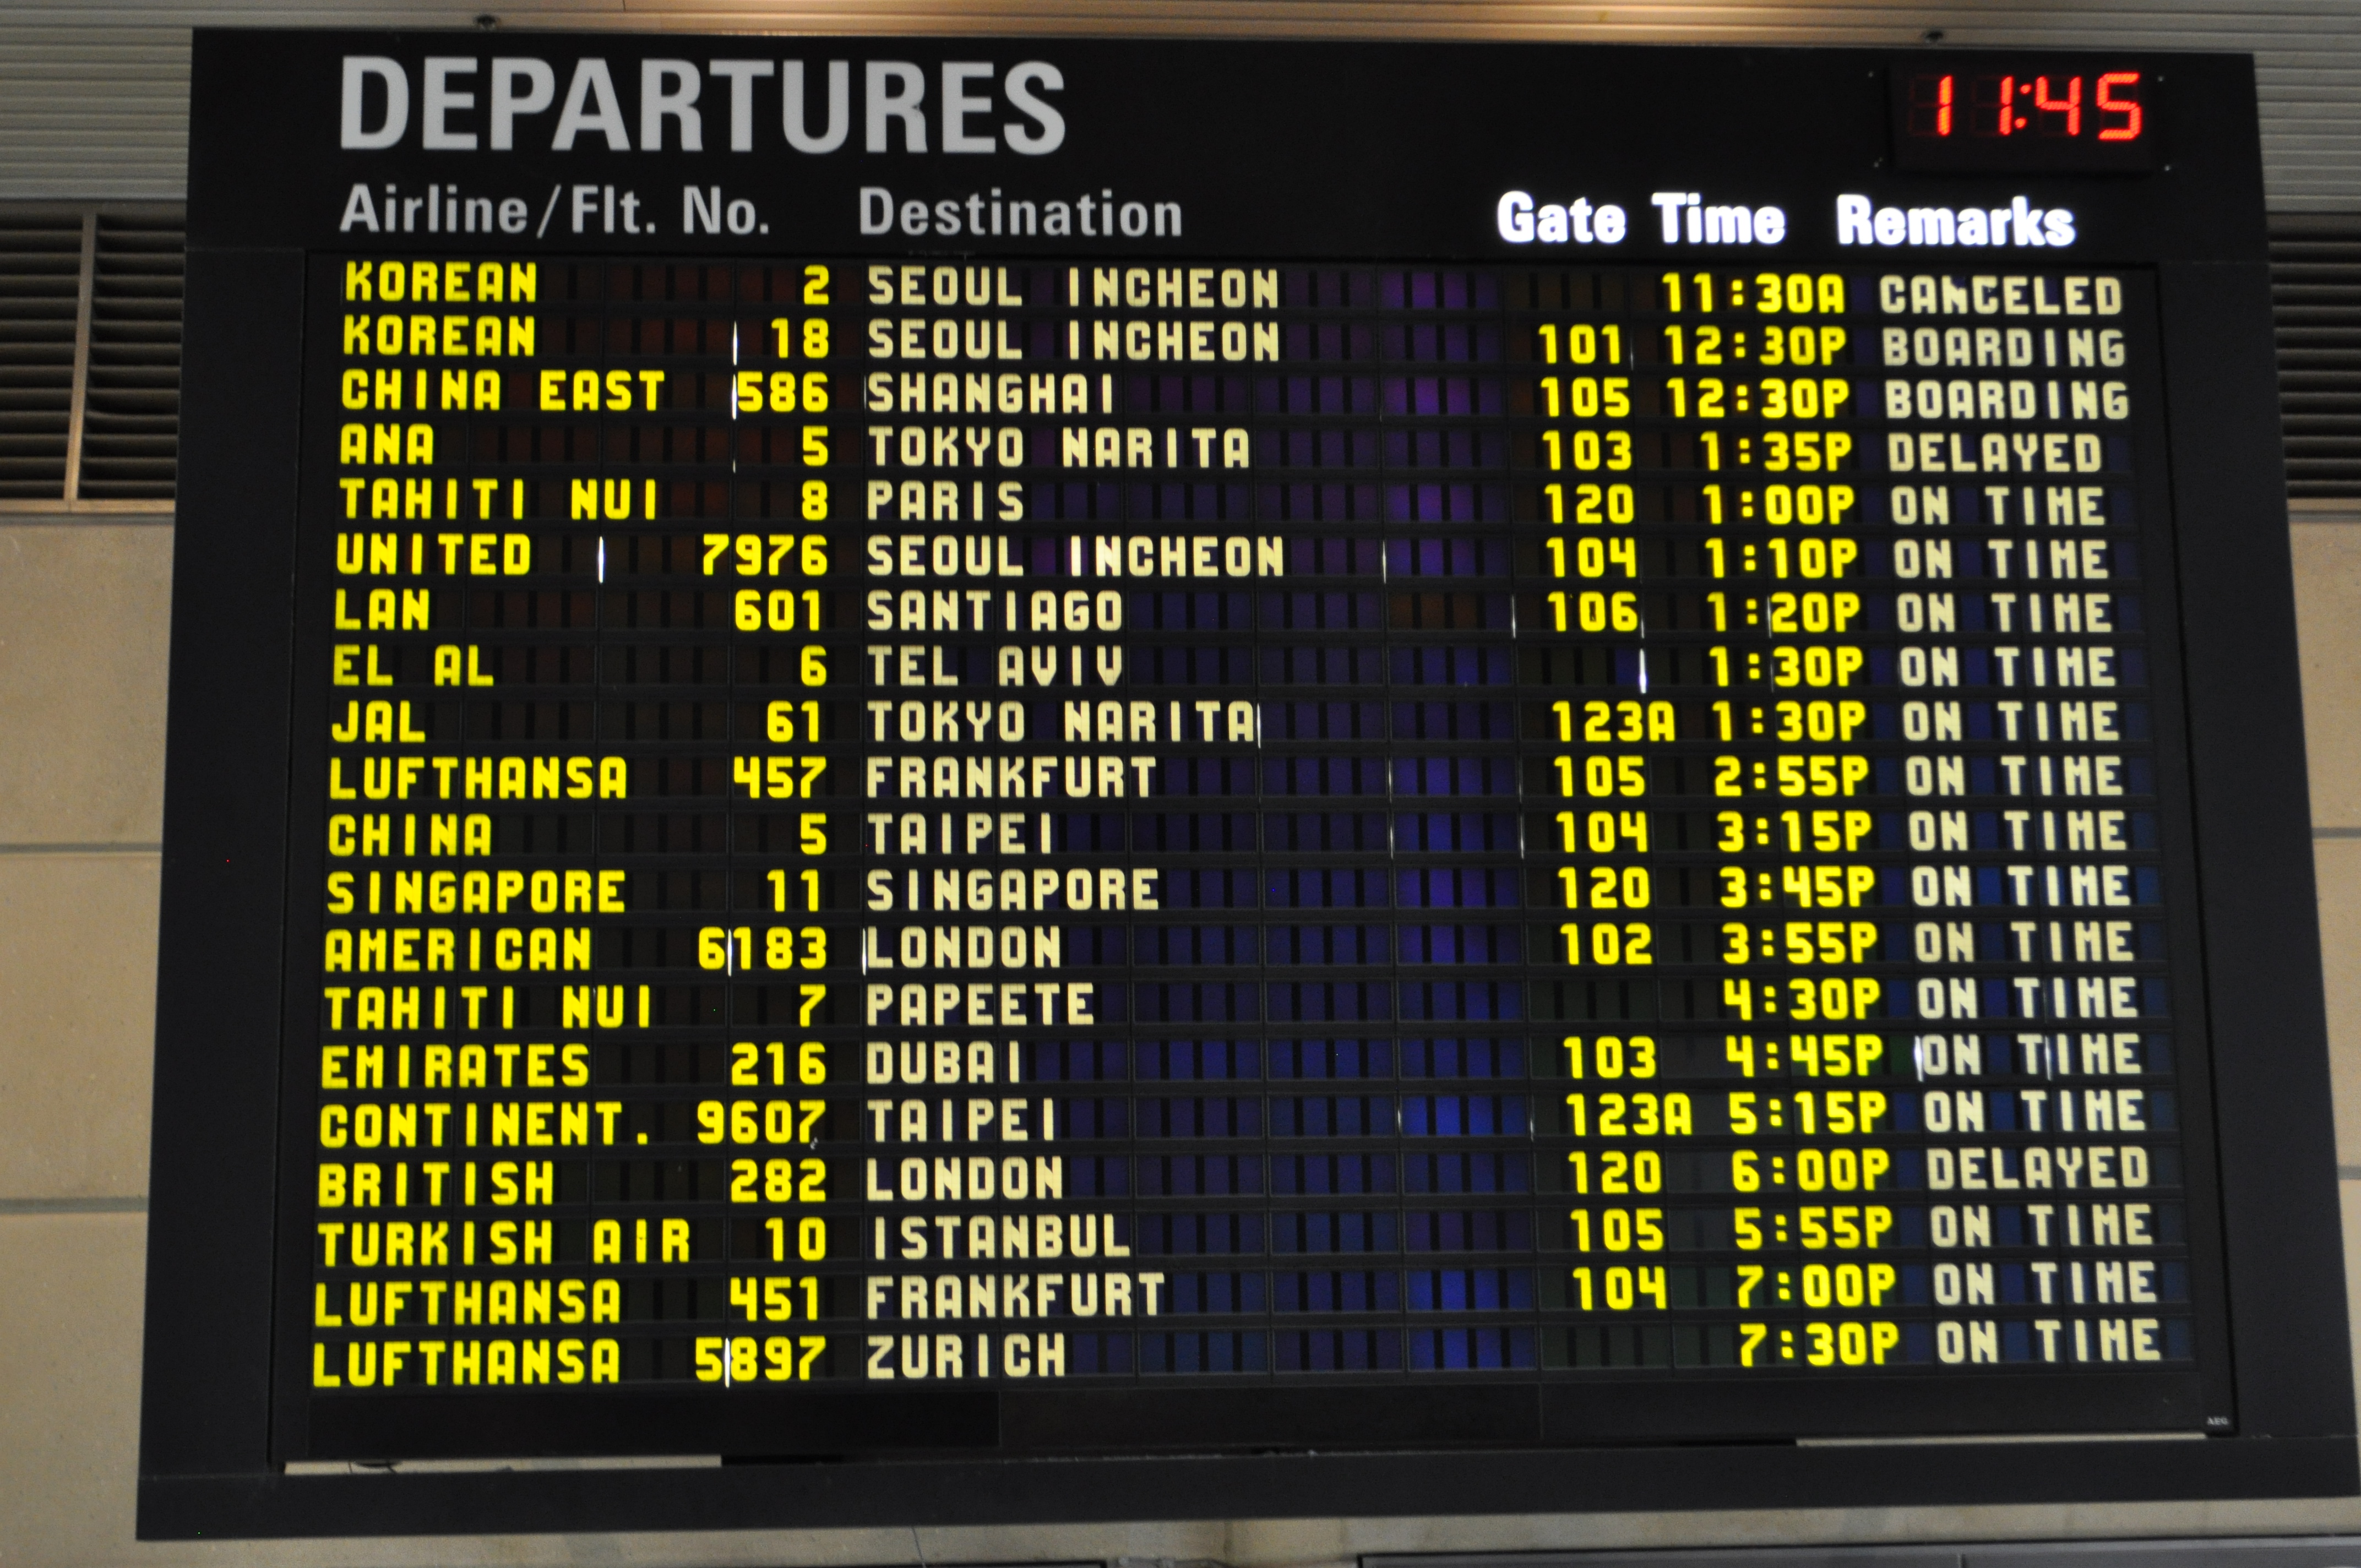 Стамбул аэропорт табло прилета на сегодня русском. Департуре в аэропорту. Аэропорт departure. Табло аэропорта. Табло в аэропорту фото.